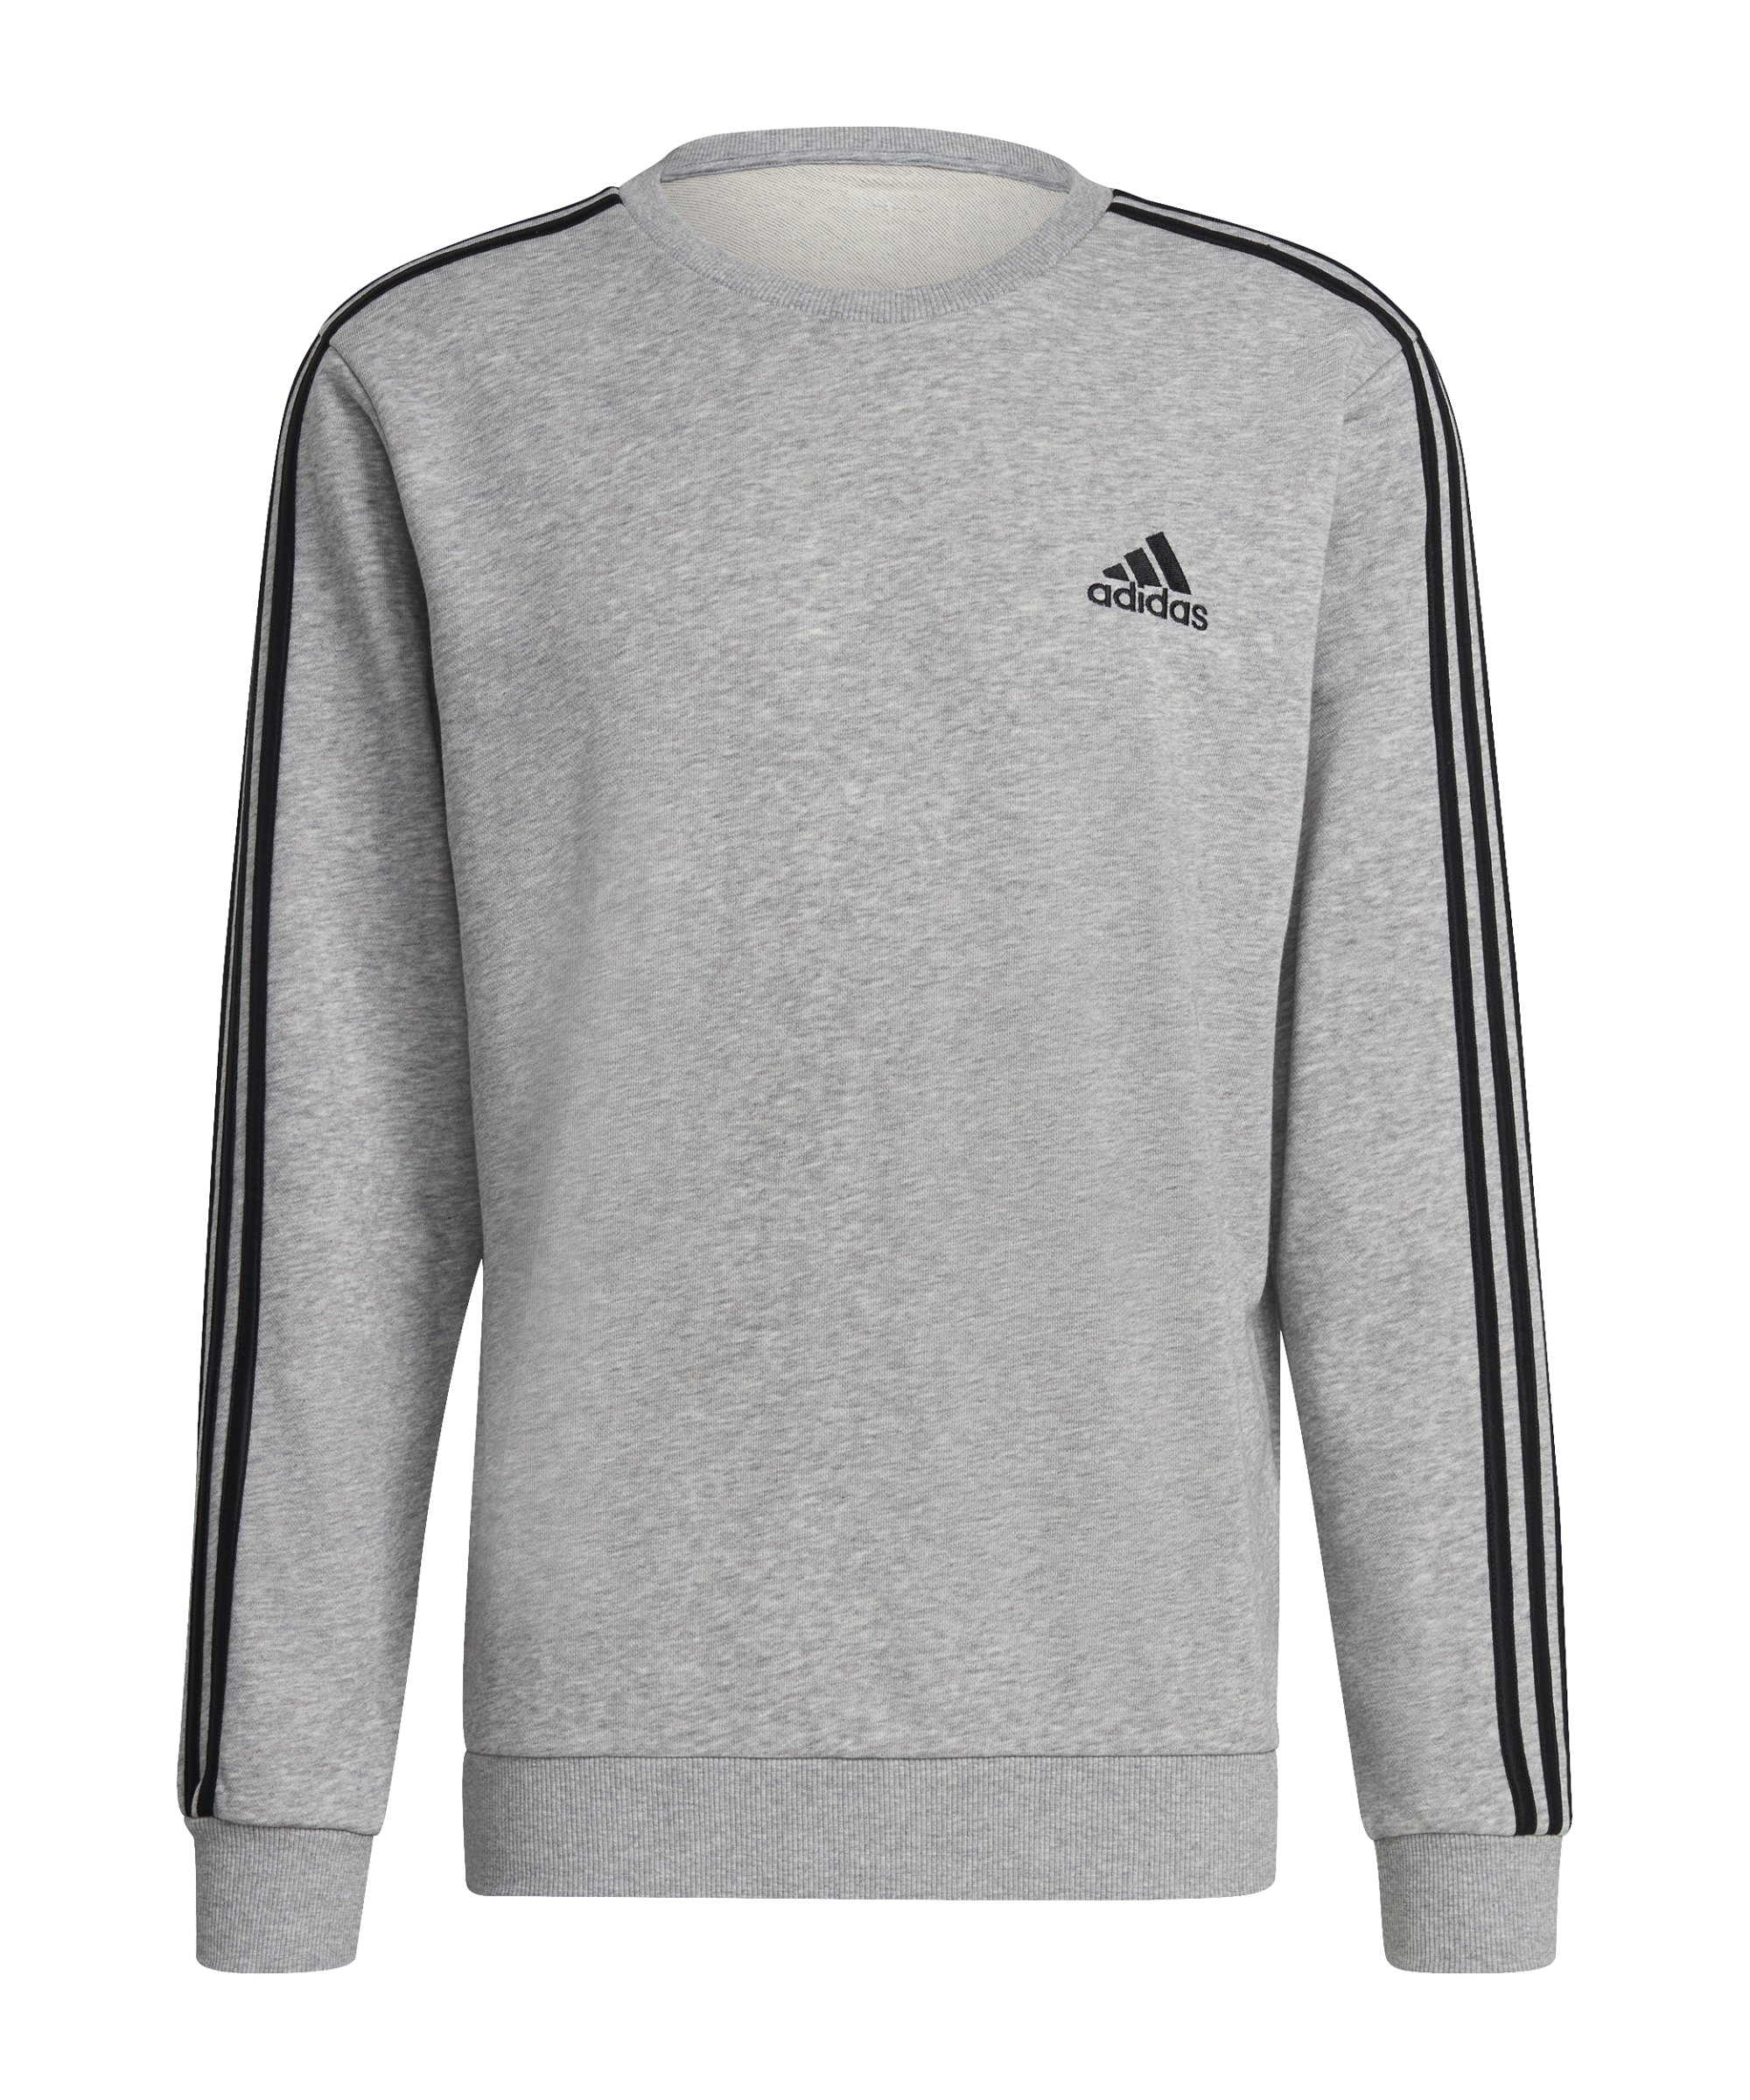 adidas Essentials 3S Sweatshirt Grau Schwarz - grau